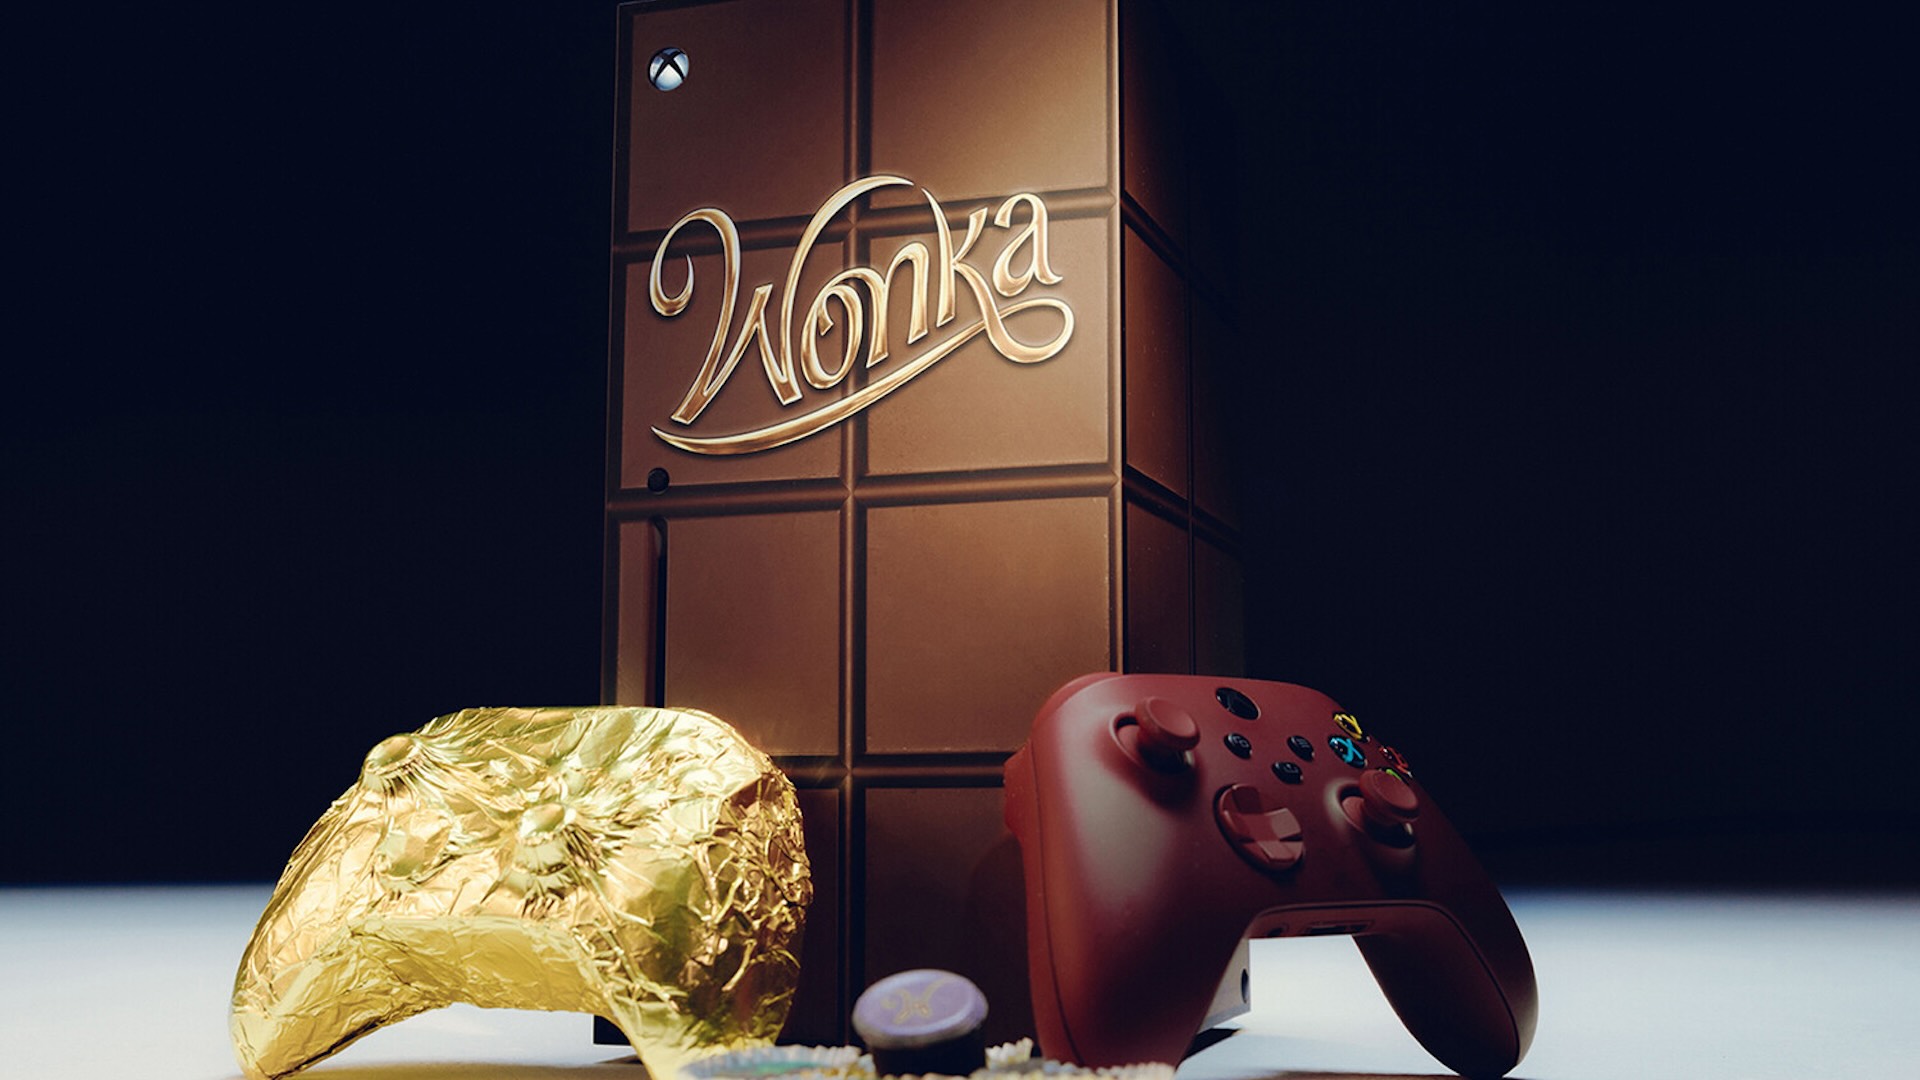 Microsoft представляет эксклюзивный комплект Xbox Series X в стиле шоколада, посвященный фильму «Вонка»